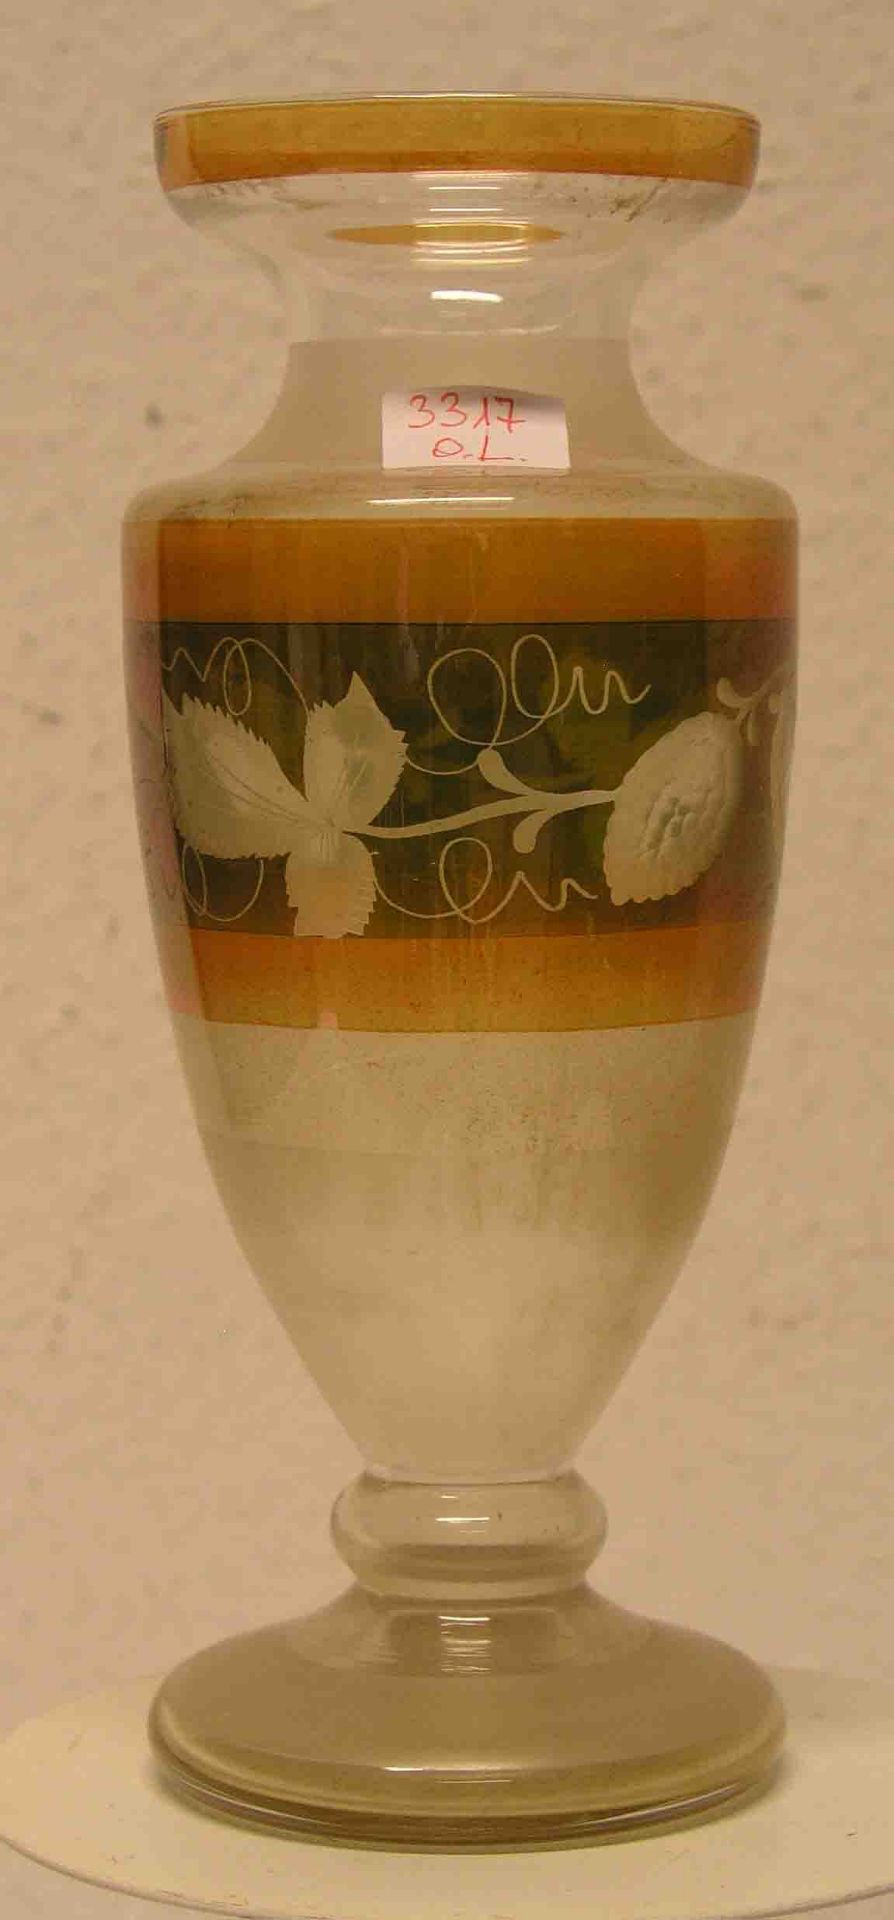 Vase, um 1930, mit umlaufendem Weinlaubdekor, Höhe: 27cm.- - -20.17 % buyer's premium on the